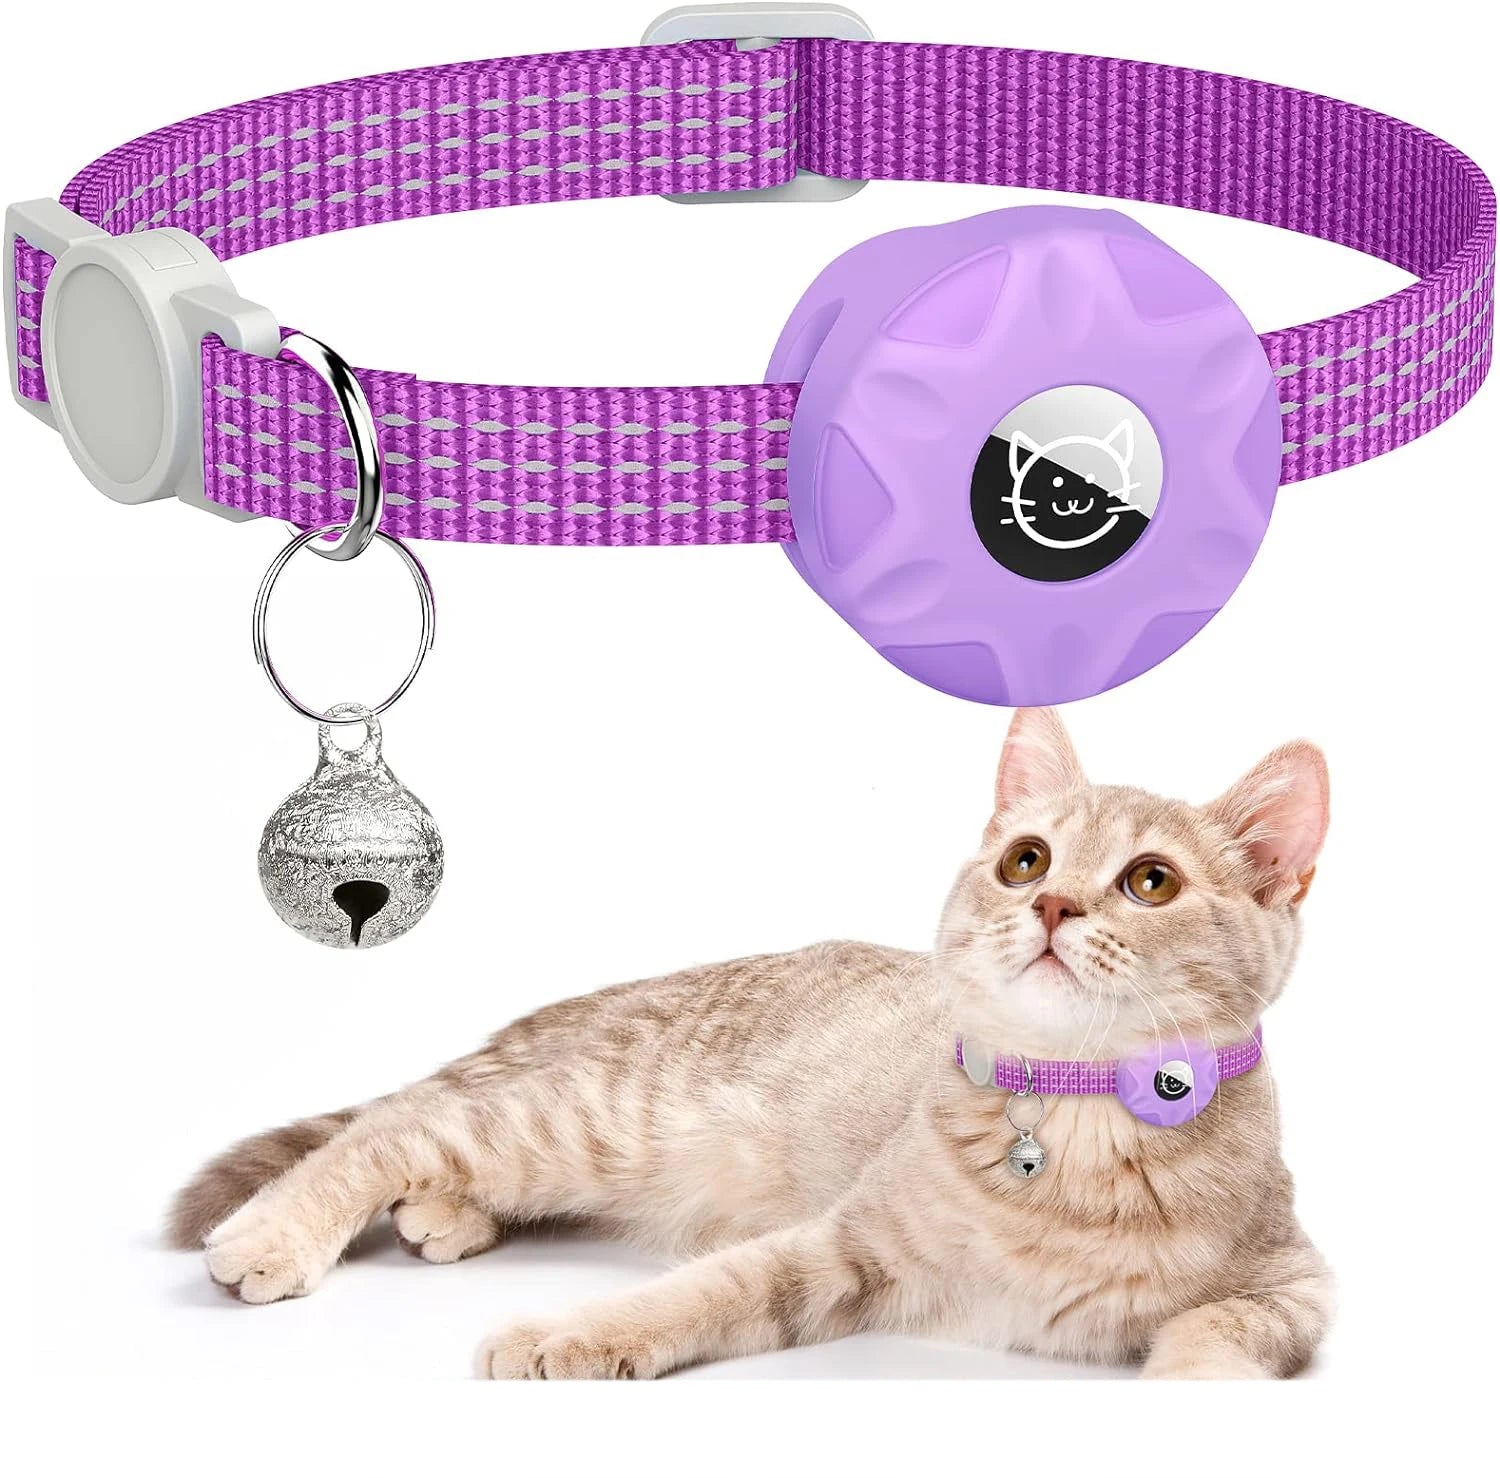 Coleira Rastreadora para Gatos + Air tag - Movimento Pet 